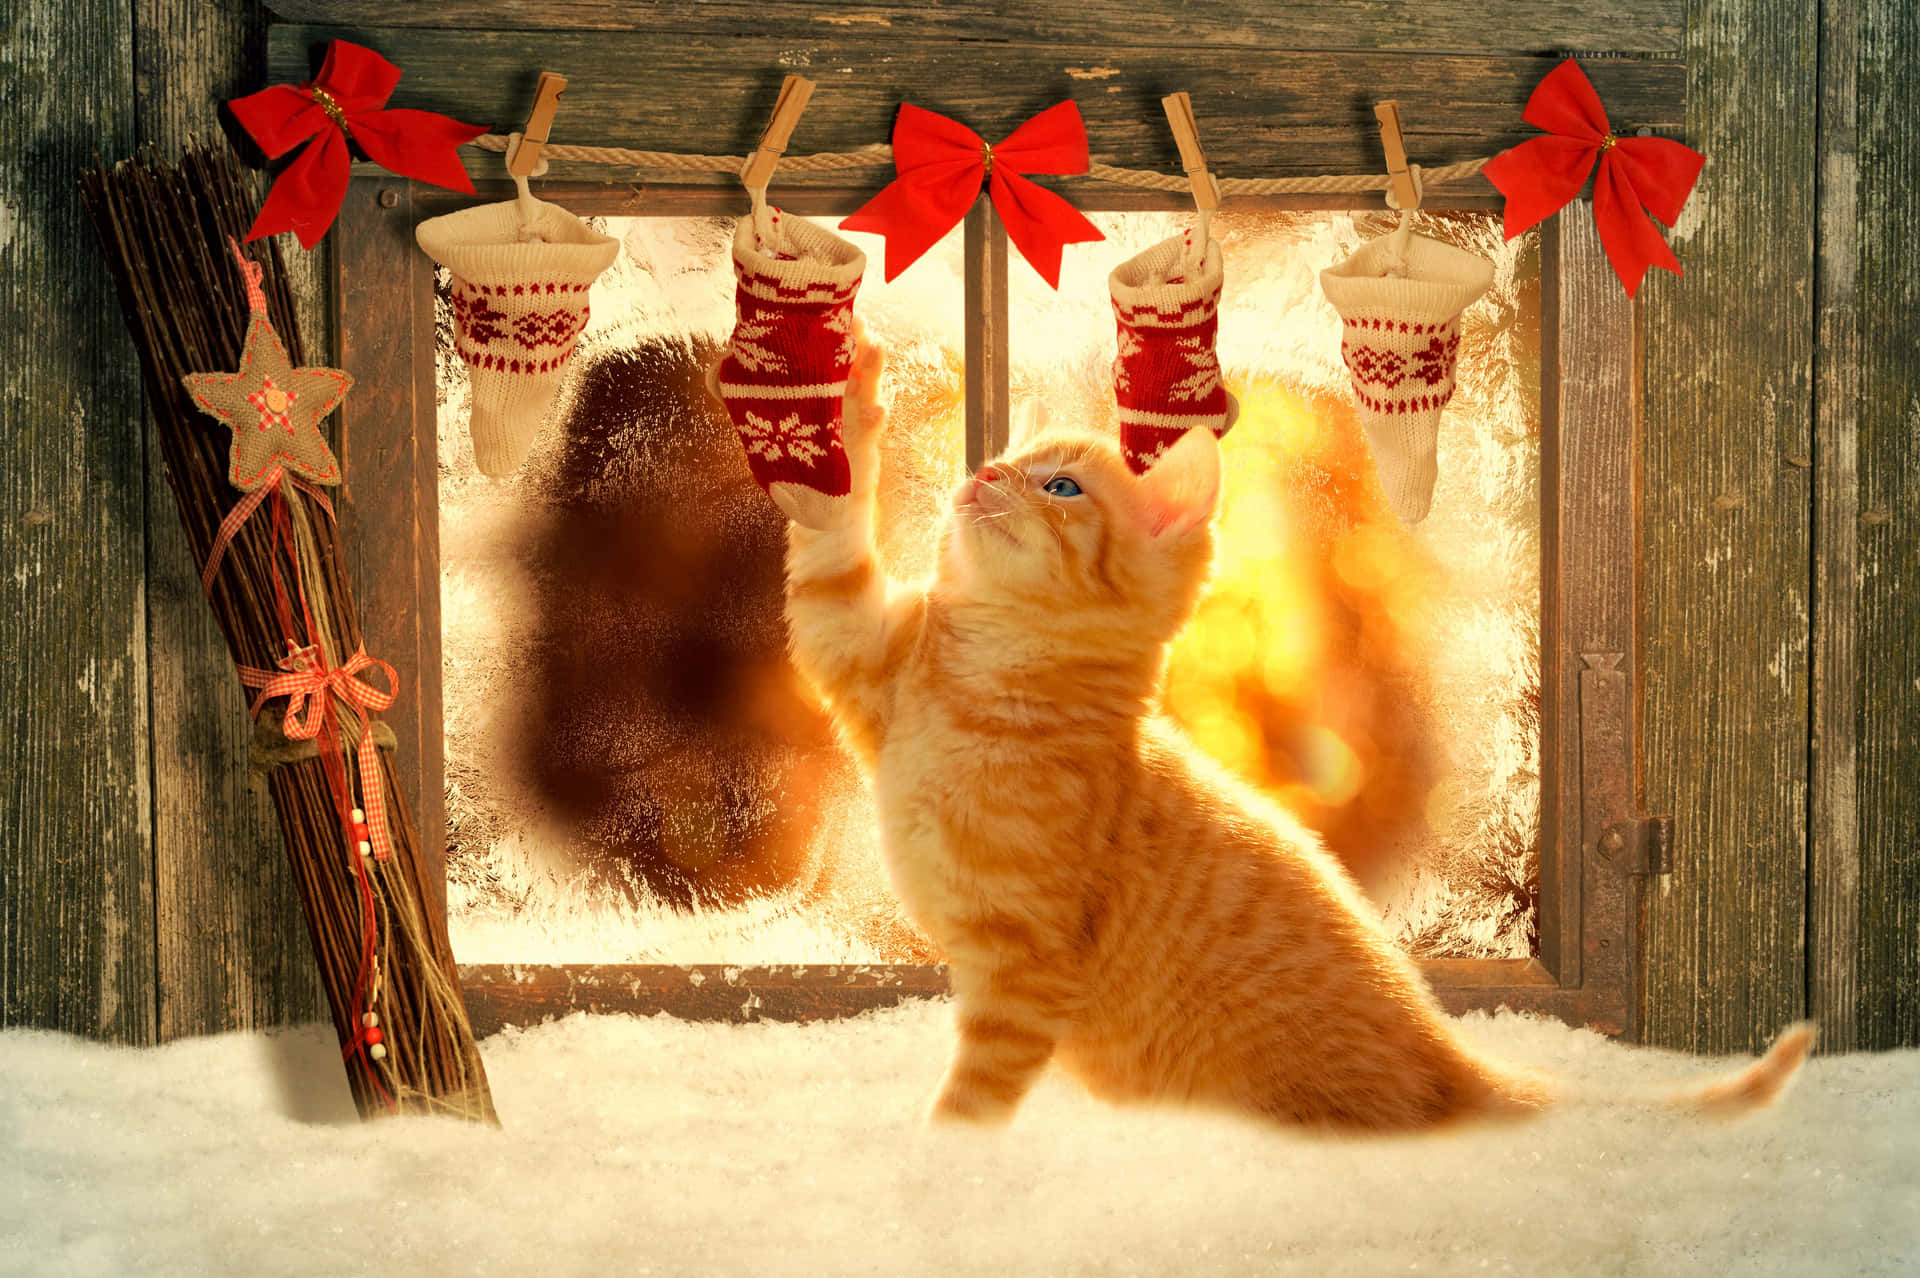 Festive Kitten Christmas Stockings Winter Scene.jpg Wallpaper